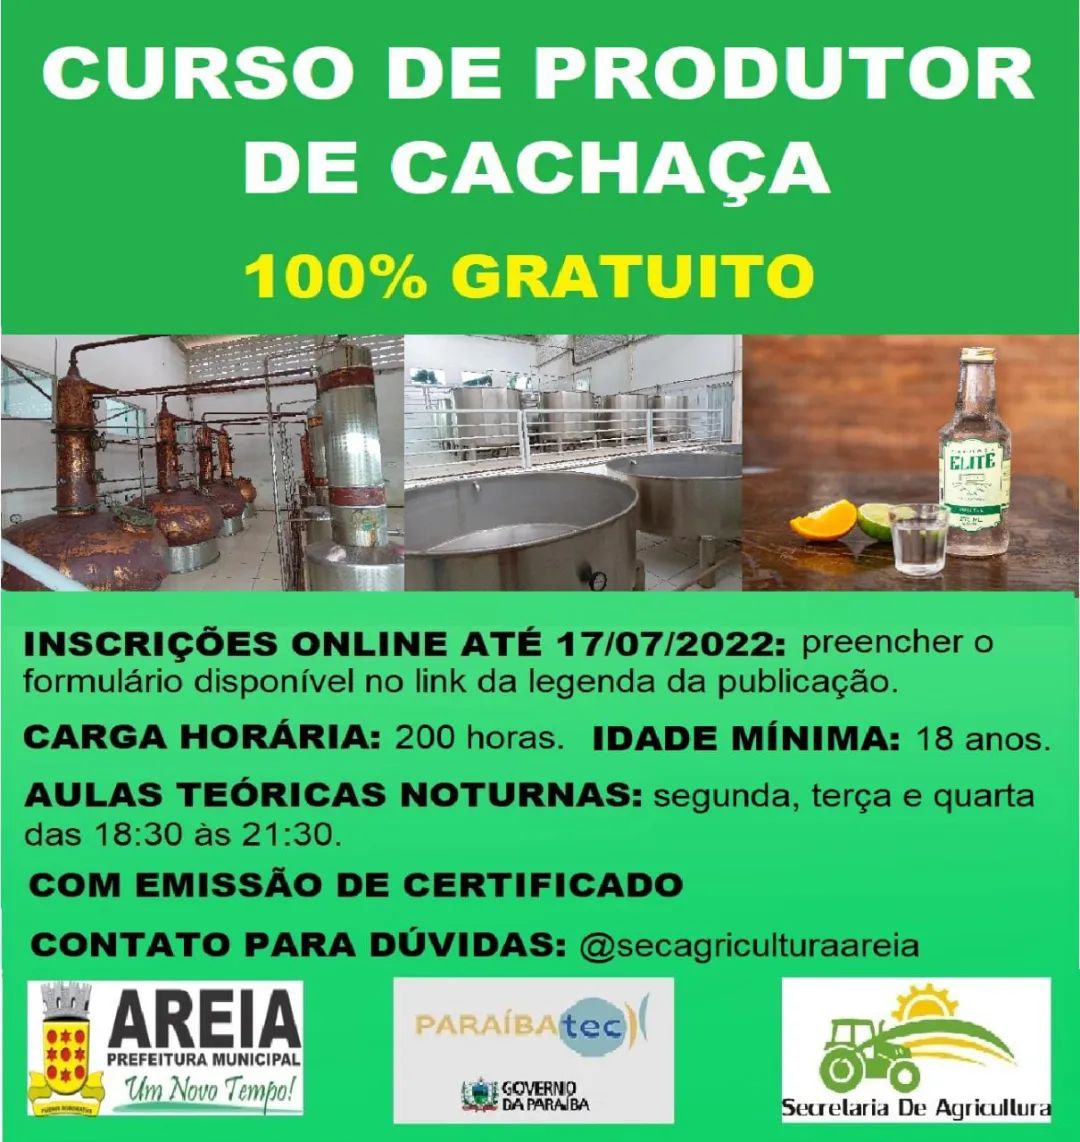 Prefeitura de Areia em parceria com o Paraíba TEC do Governo do Estado oferece curso profissionalizante de produtor de cachaça